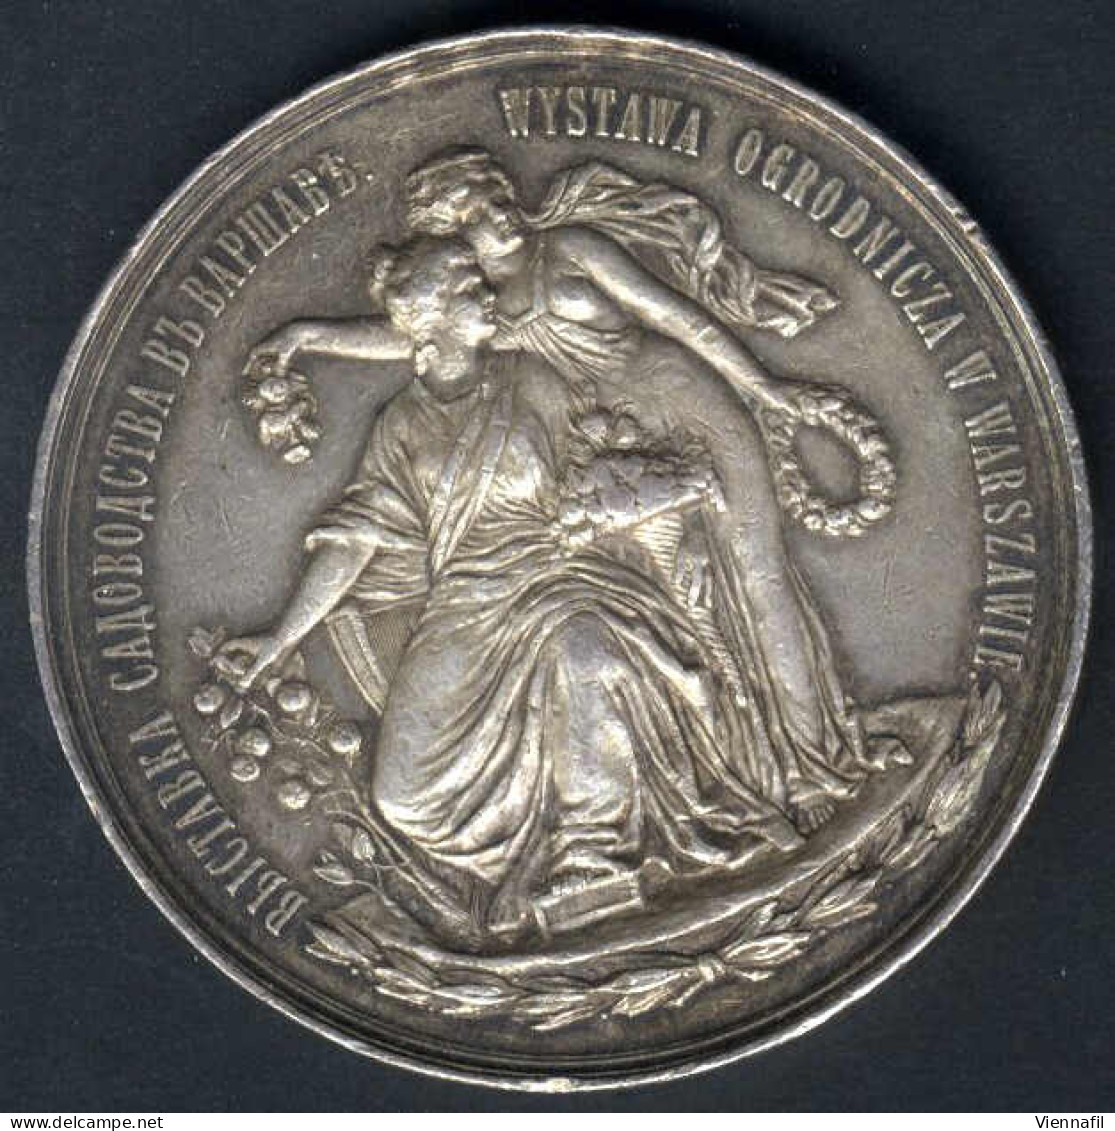 Medaille Der Warschauer Gartenbaugenossenschaft, Gartenbauausstellung Warschau 1895, Silbermedaille Von L. Steinman Für  - Pologne